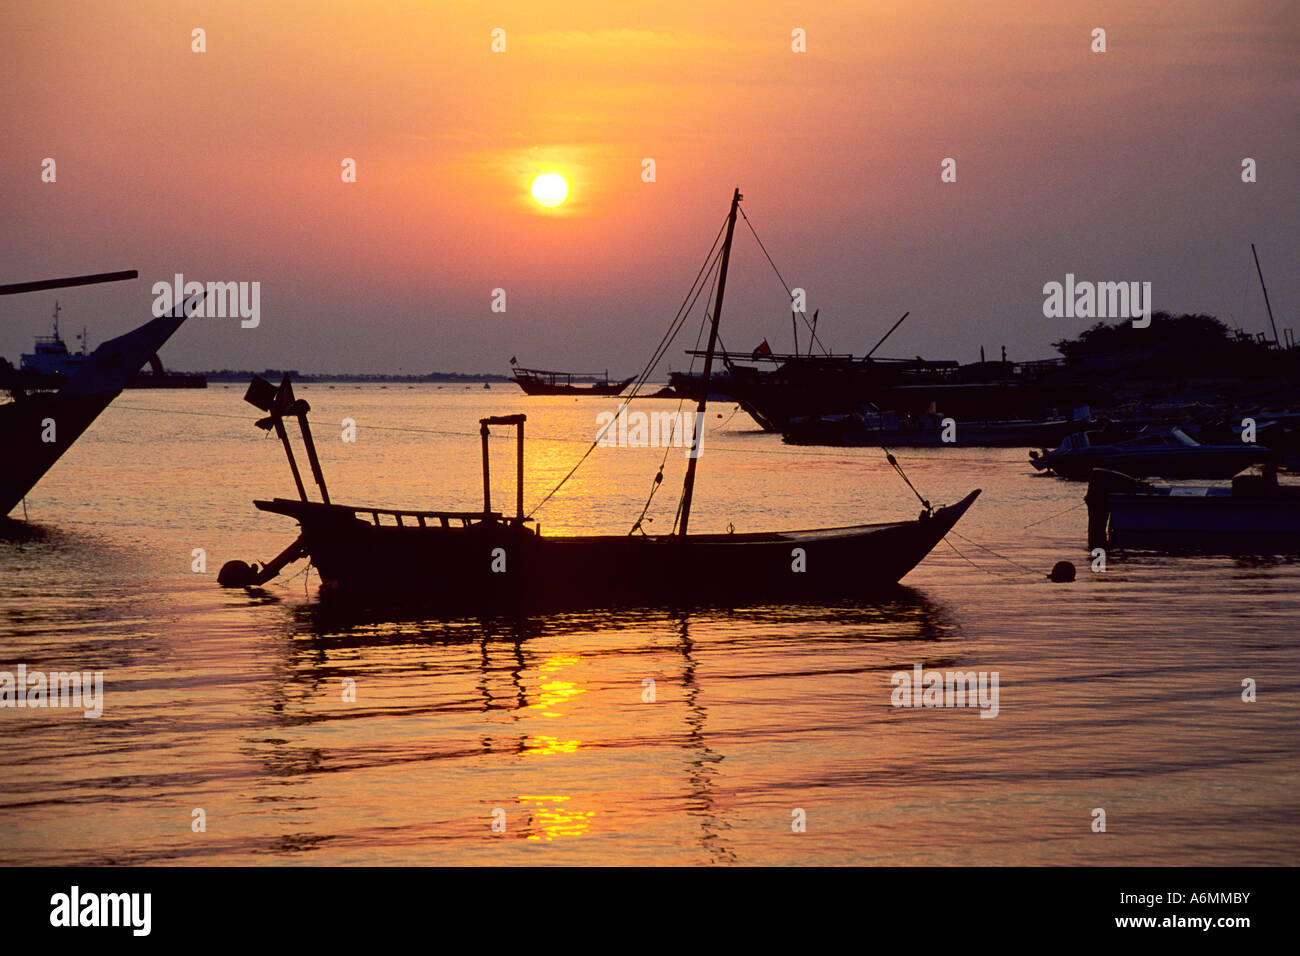 Batin harbour at sunset Abu Dhabi United Arab Emirates Stock Photo